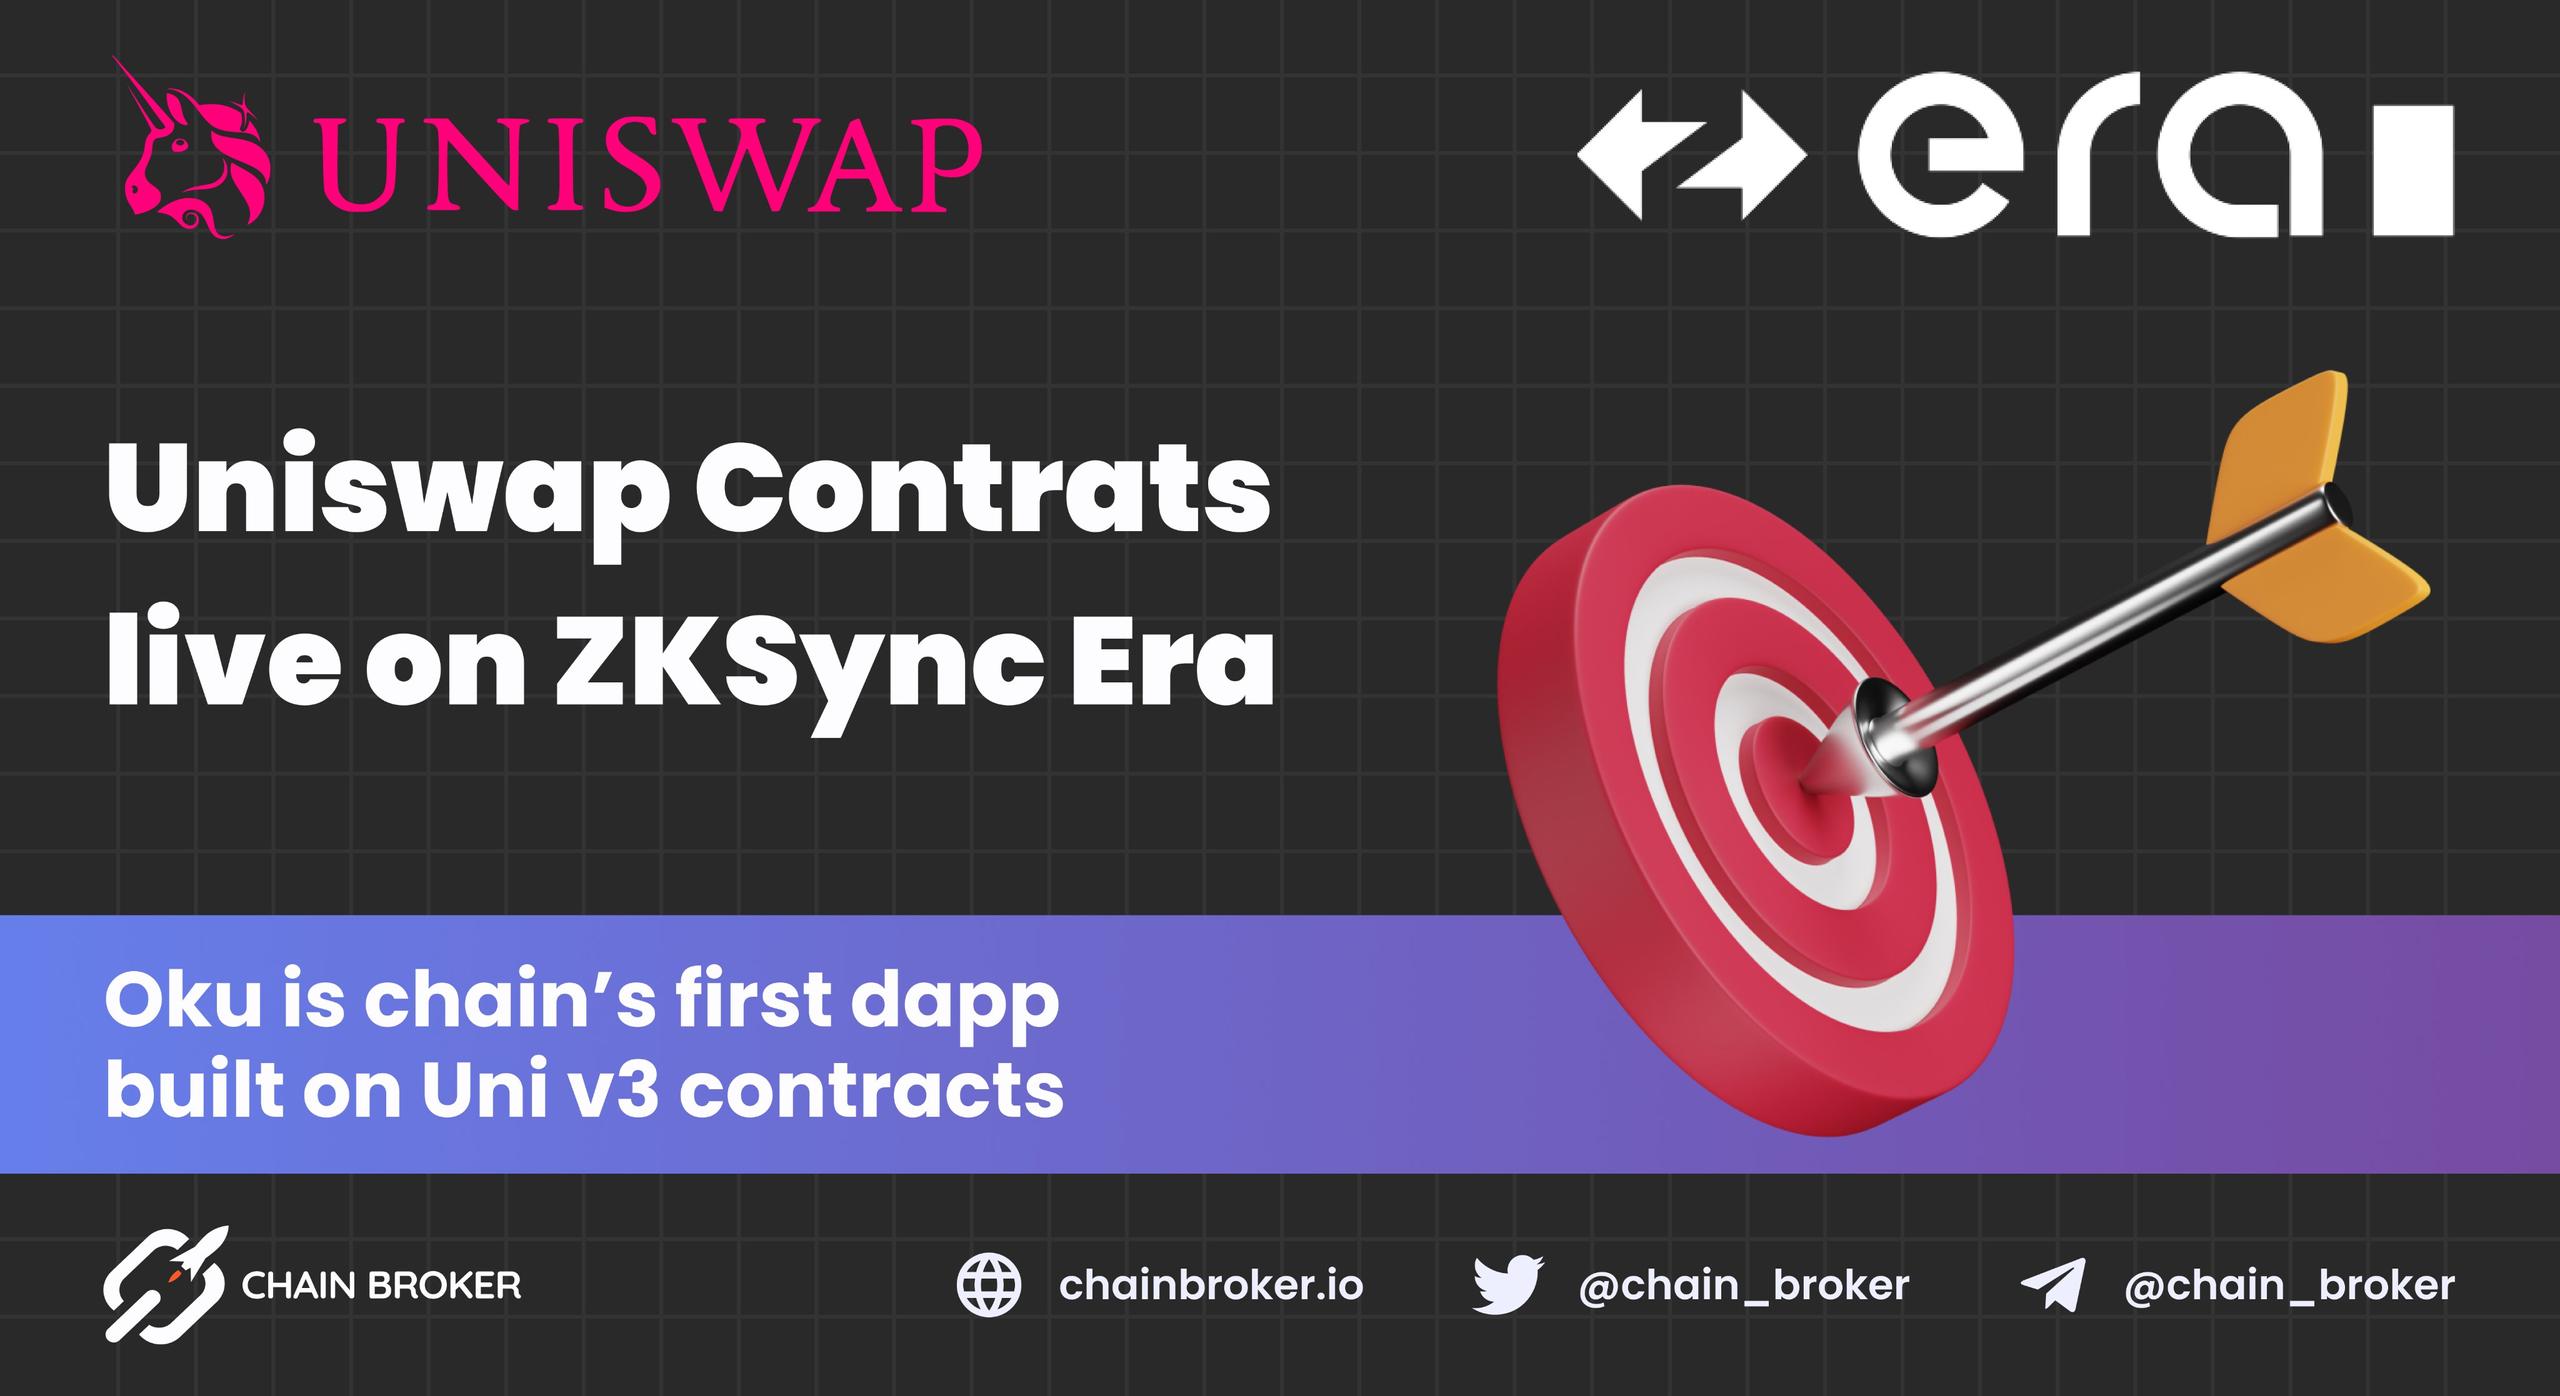 Uniswap V3 contracts are live on ZKSync Era